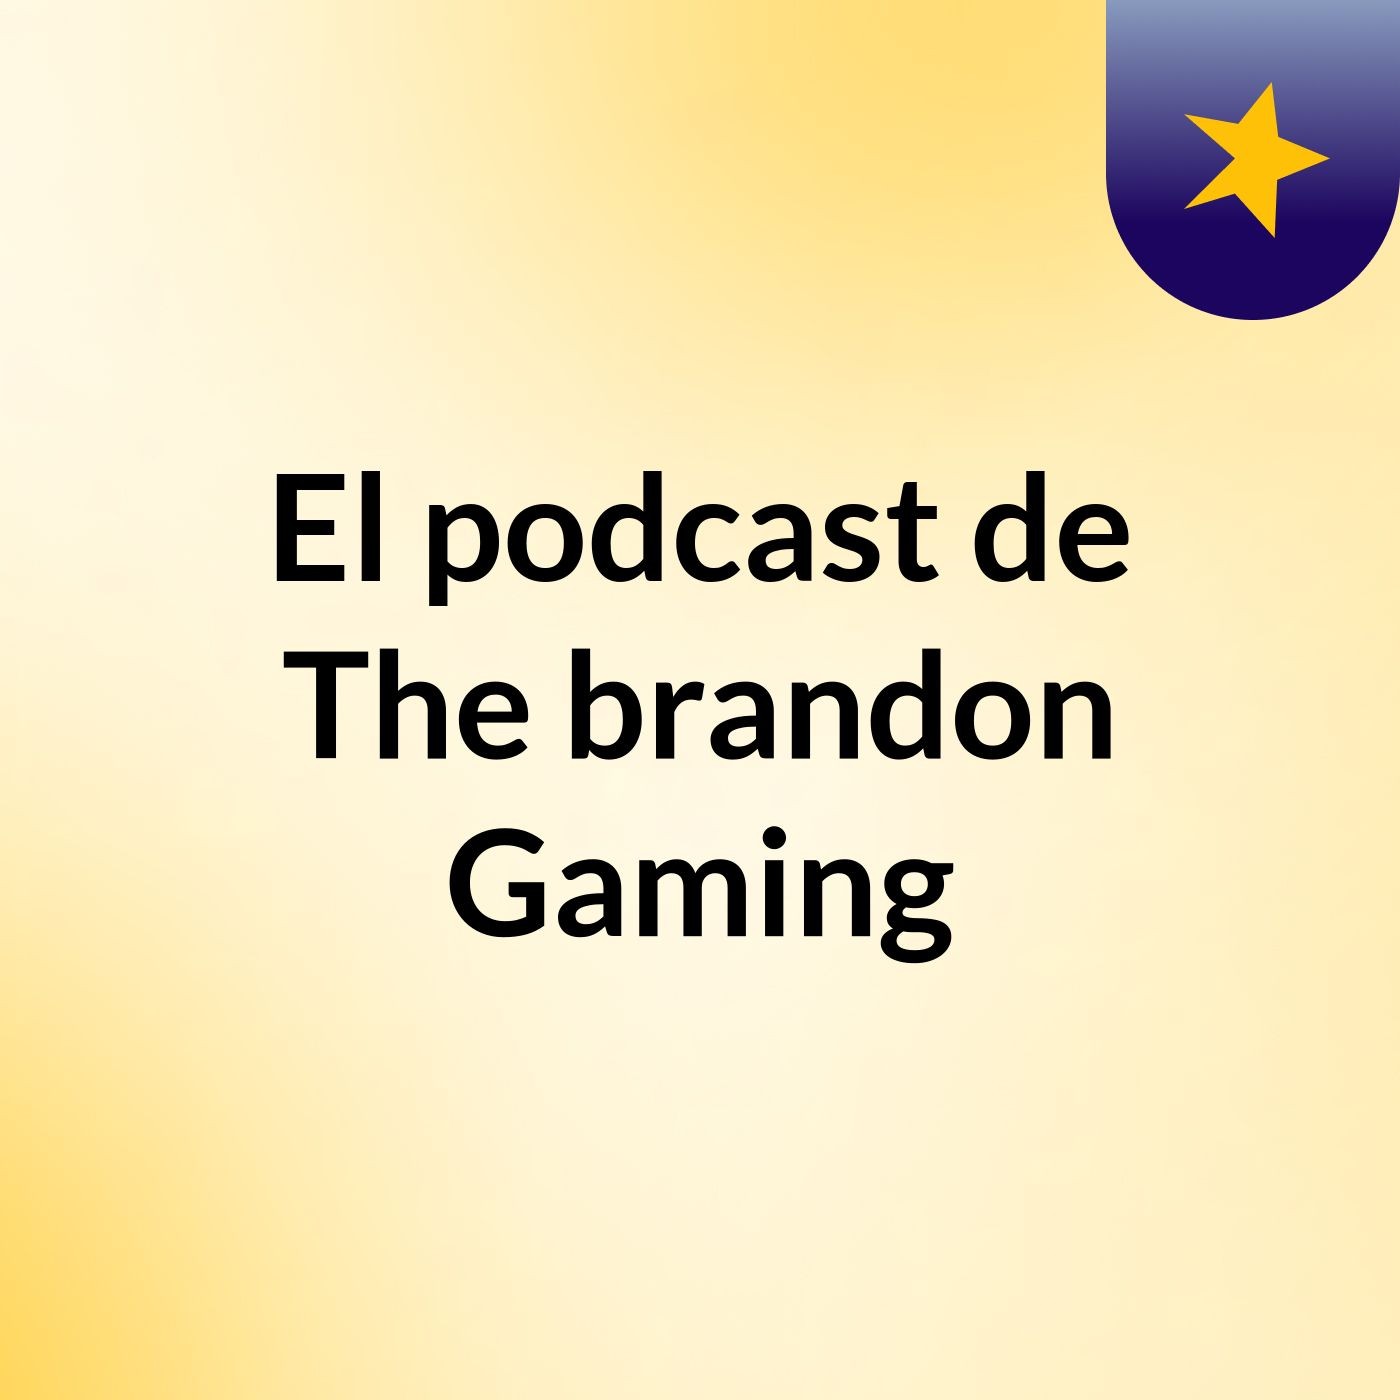 El podcast de The brandon Gaming